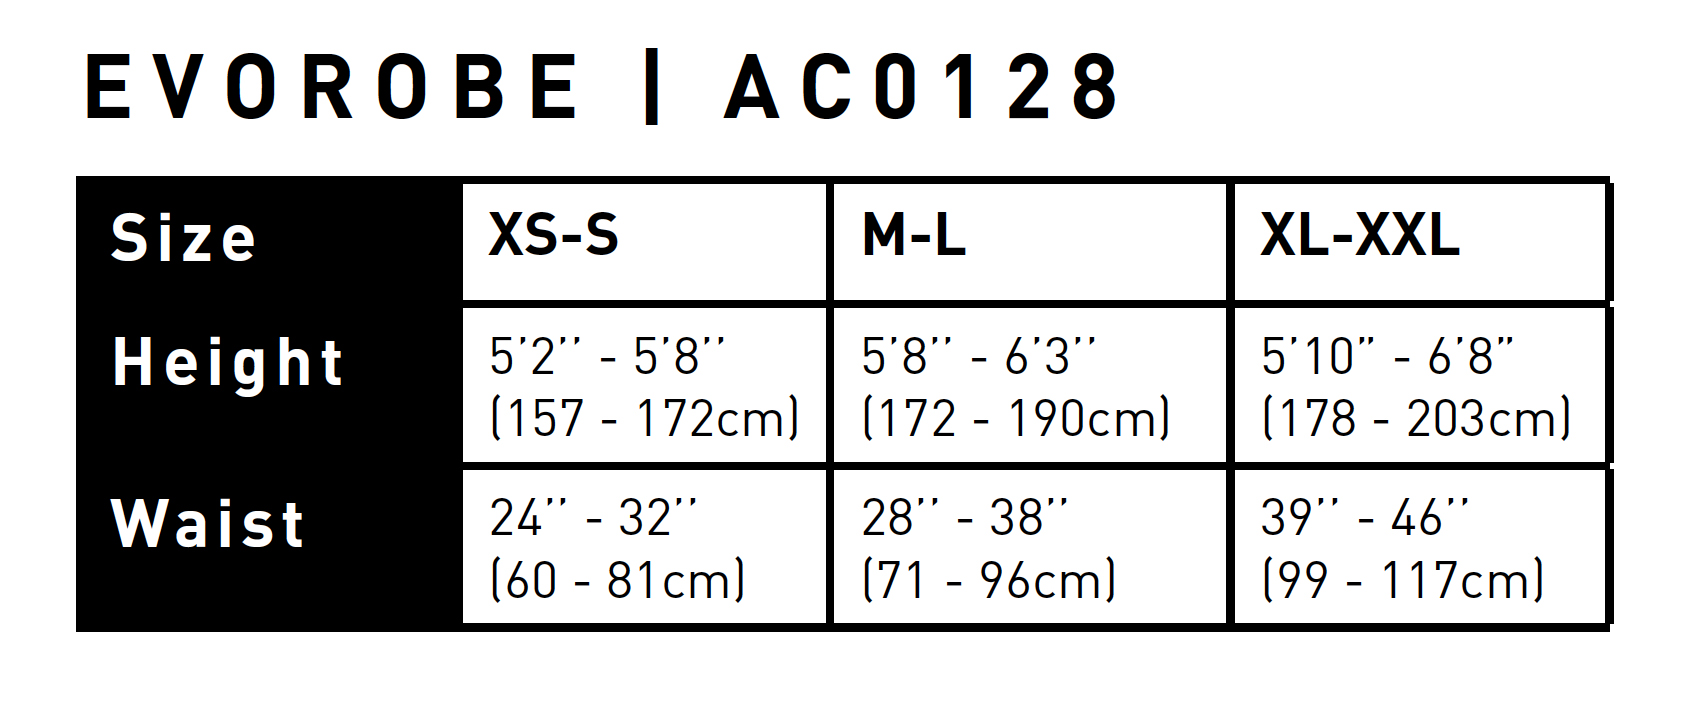 Gul EvoRobe Adult Size 2021 0 Tabla de Tallas